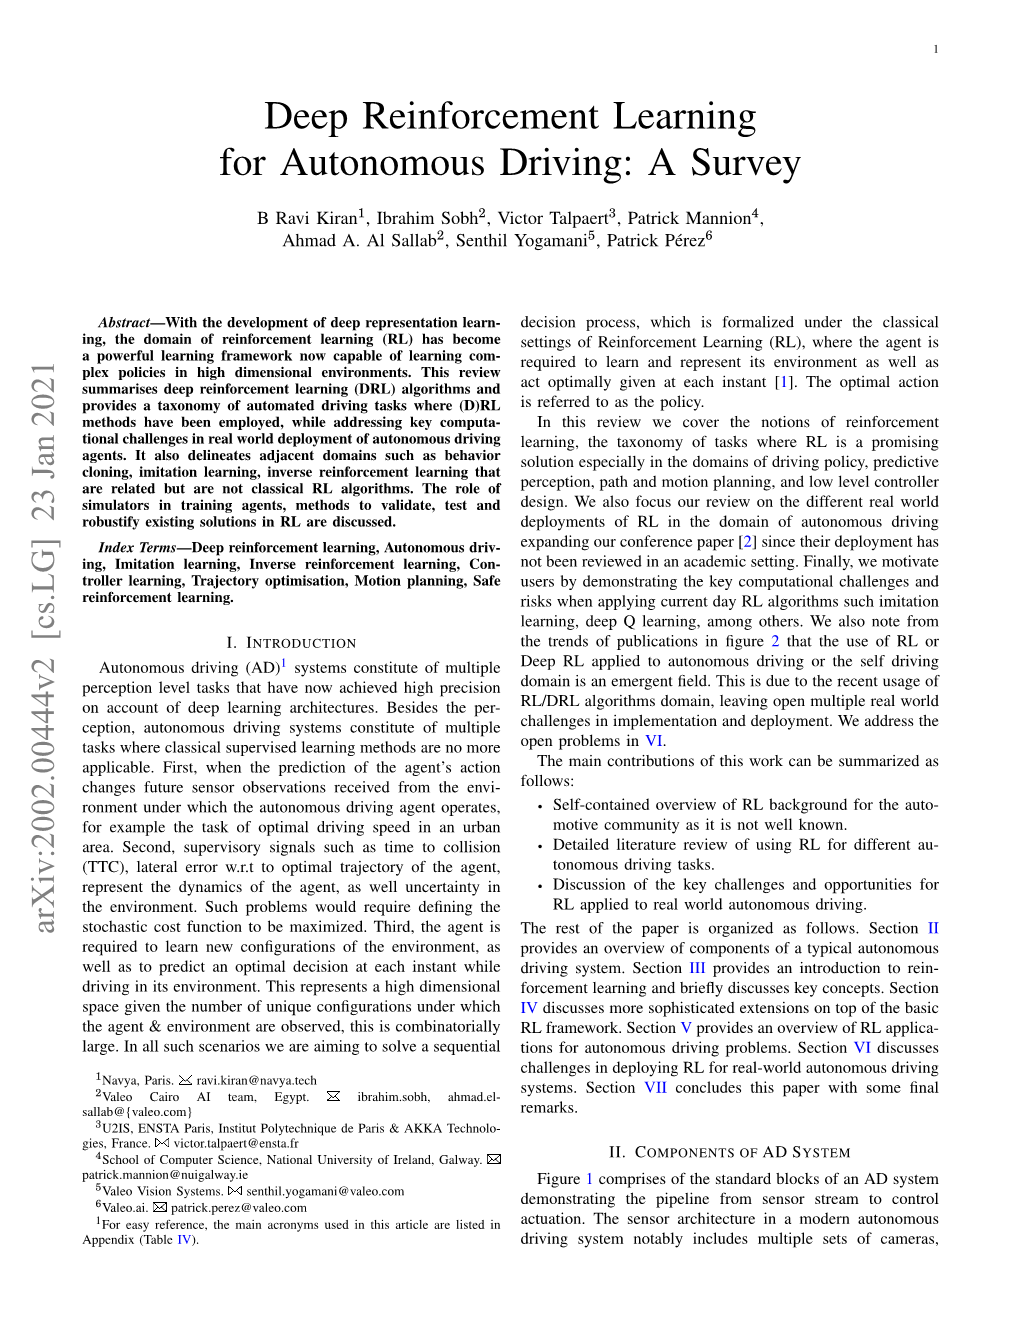 Deep Reinforcement Learning for Autonomous Driving: a Survey